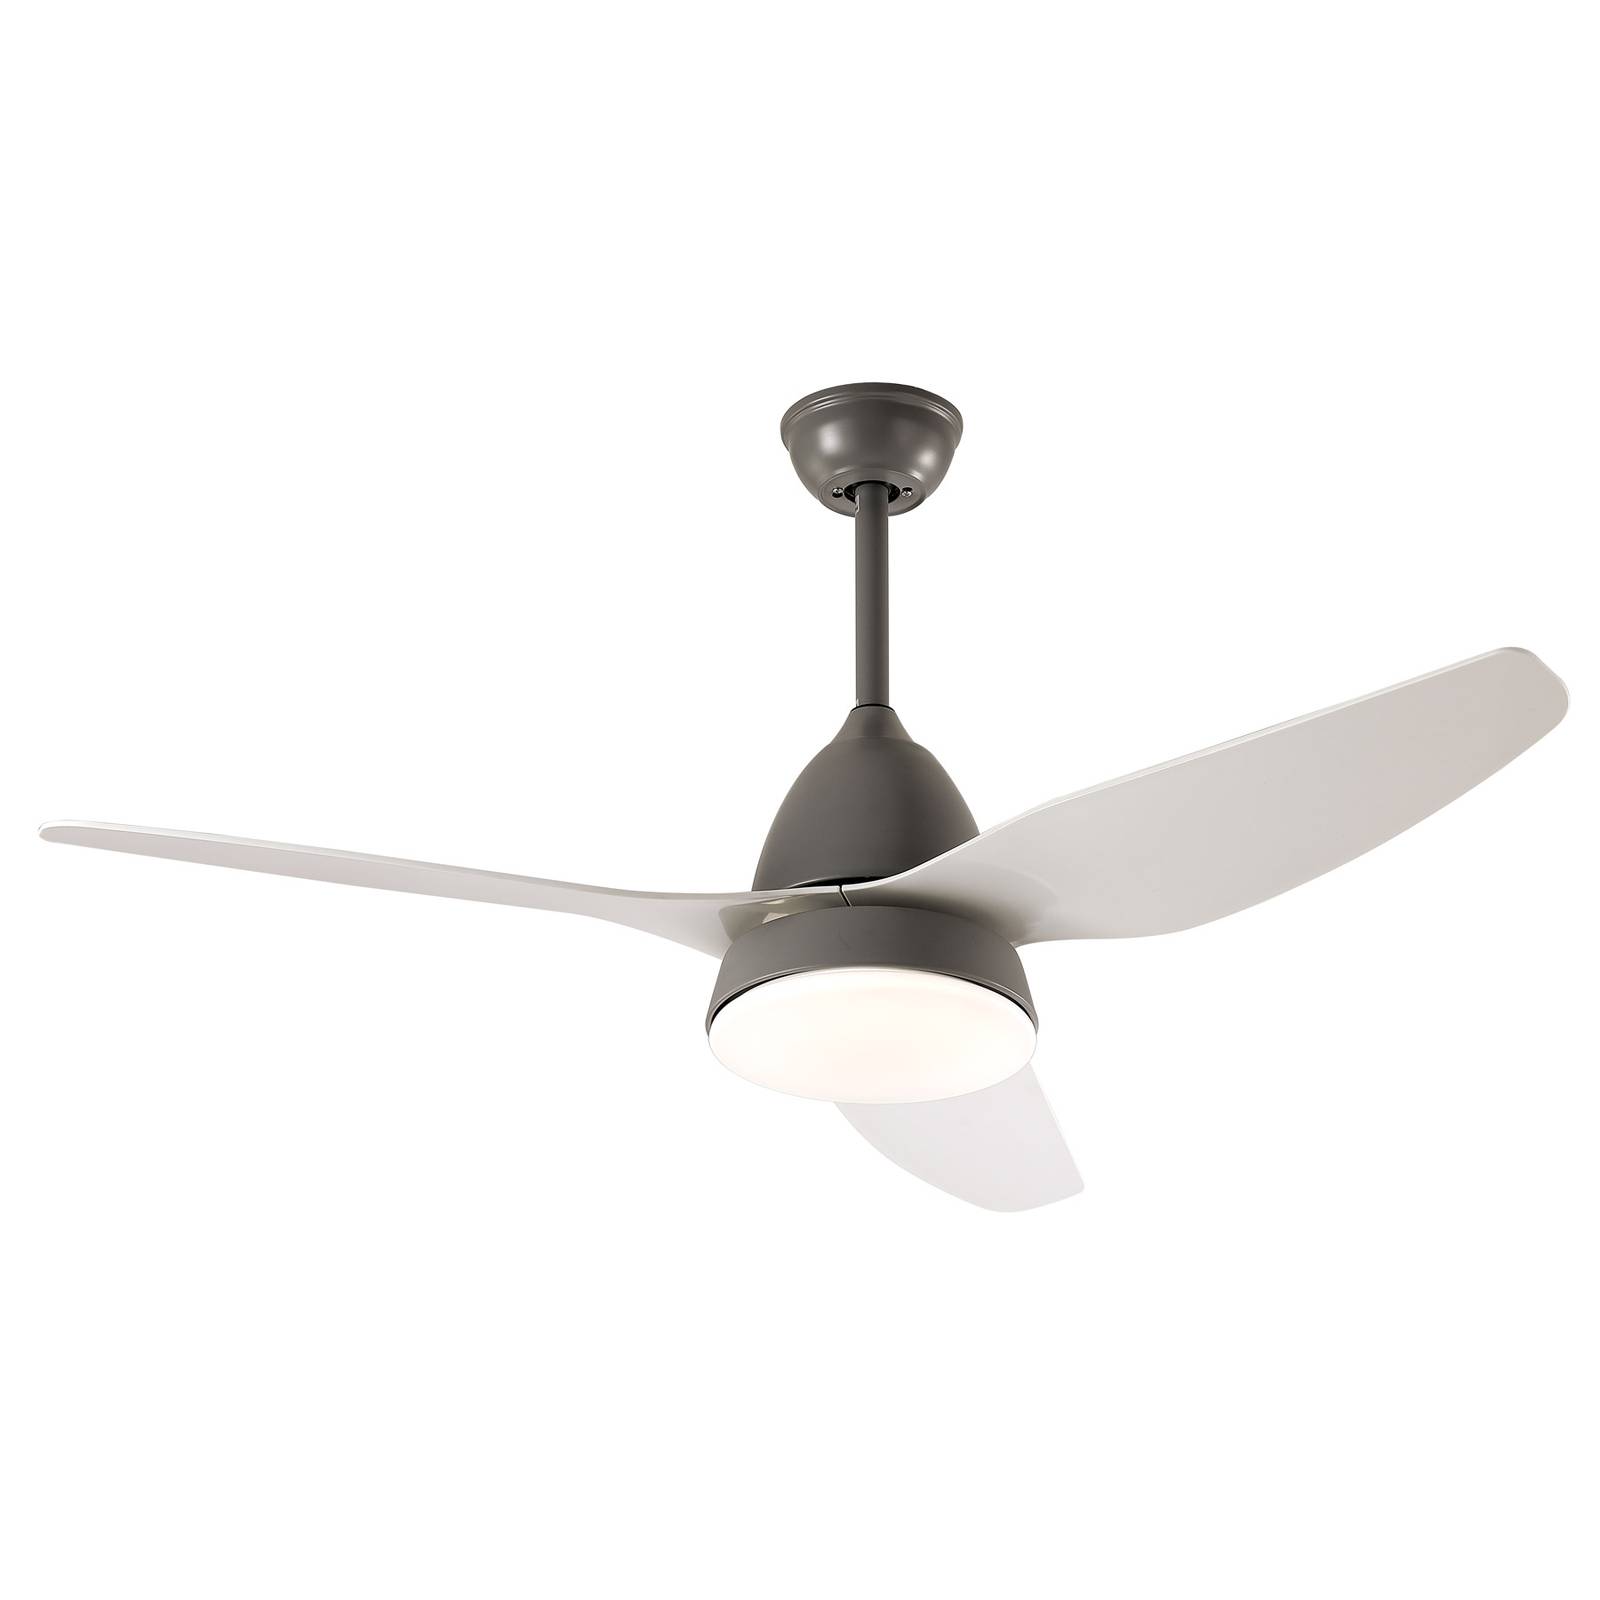 Image of Starluna Coriano ventilateur de plafond LED, gris 4251911746433